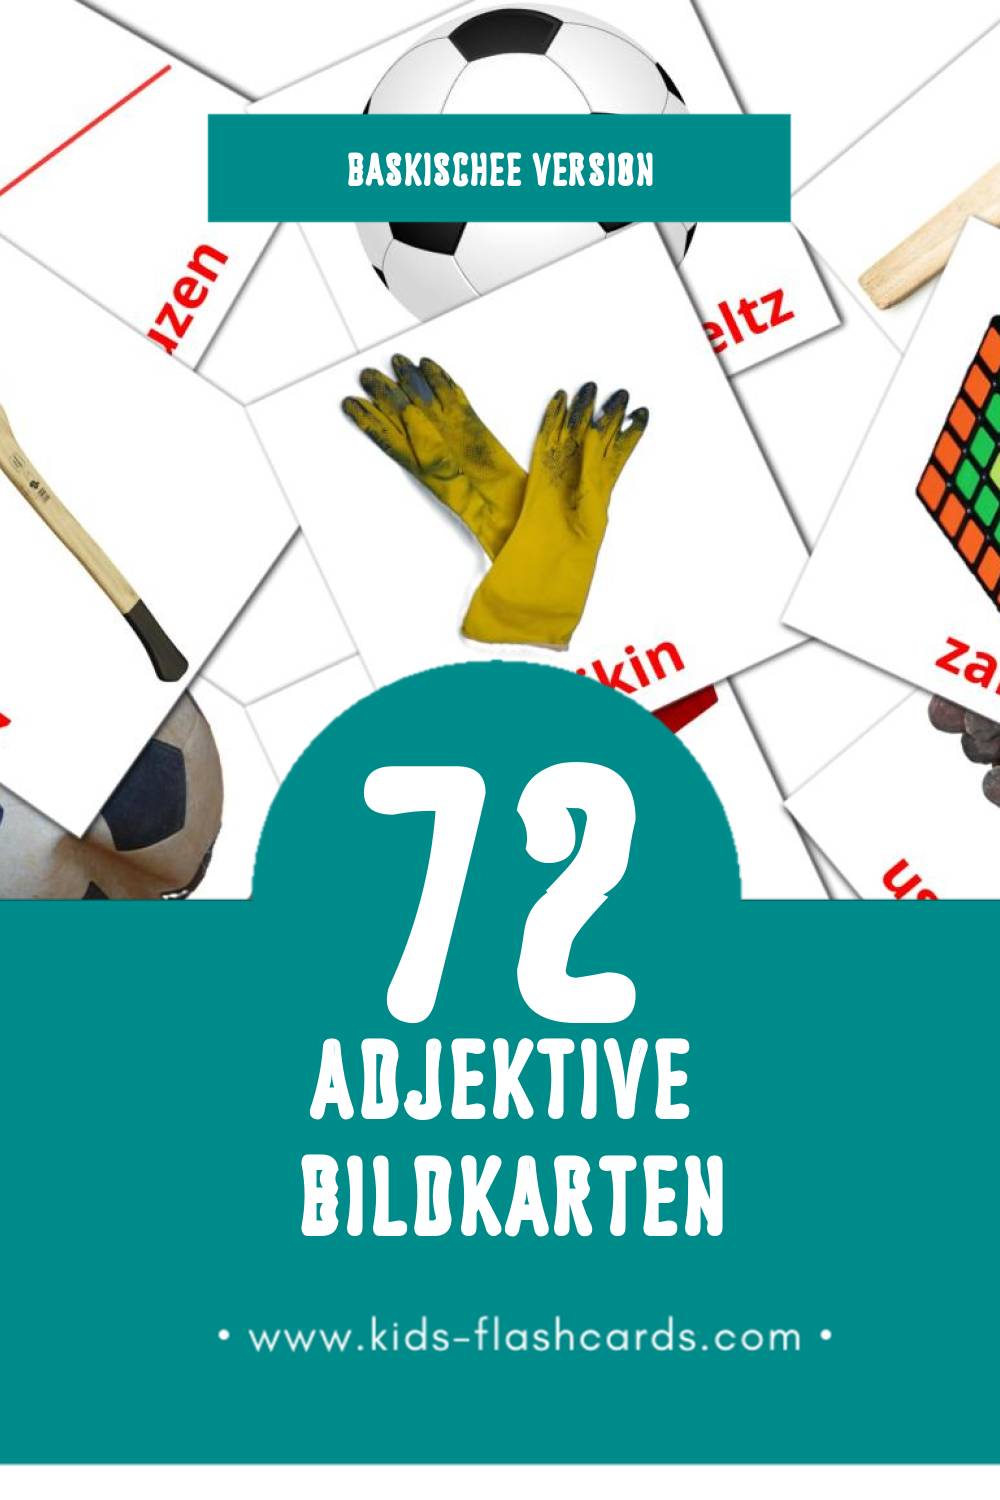 Visual Adjektiboak Flashcards für Kleinkinder (72 Karten in Baskische)